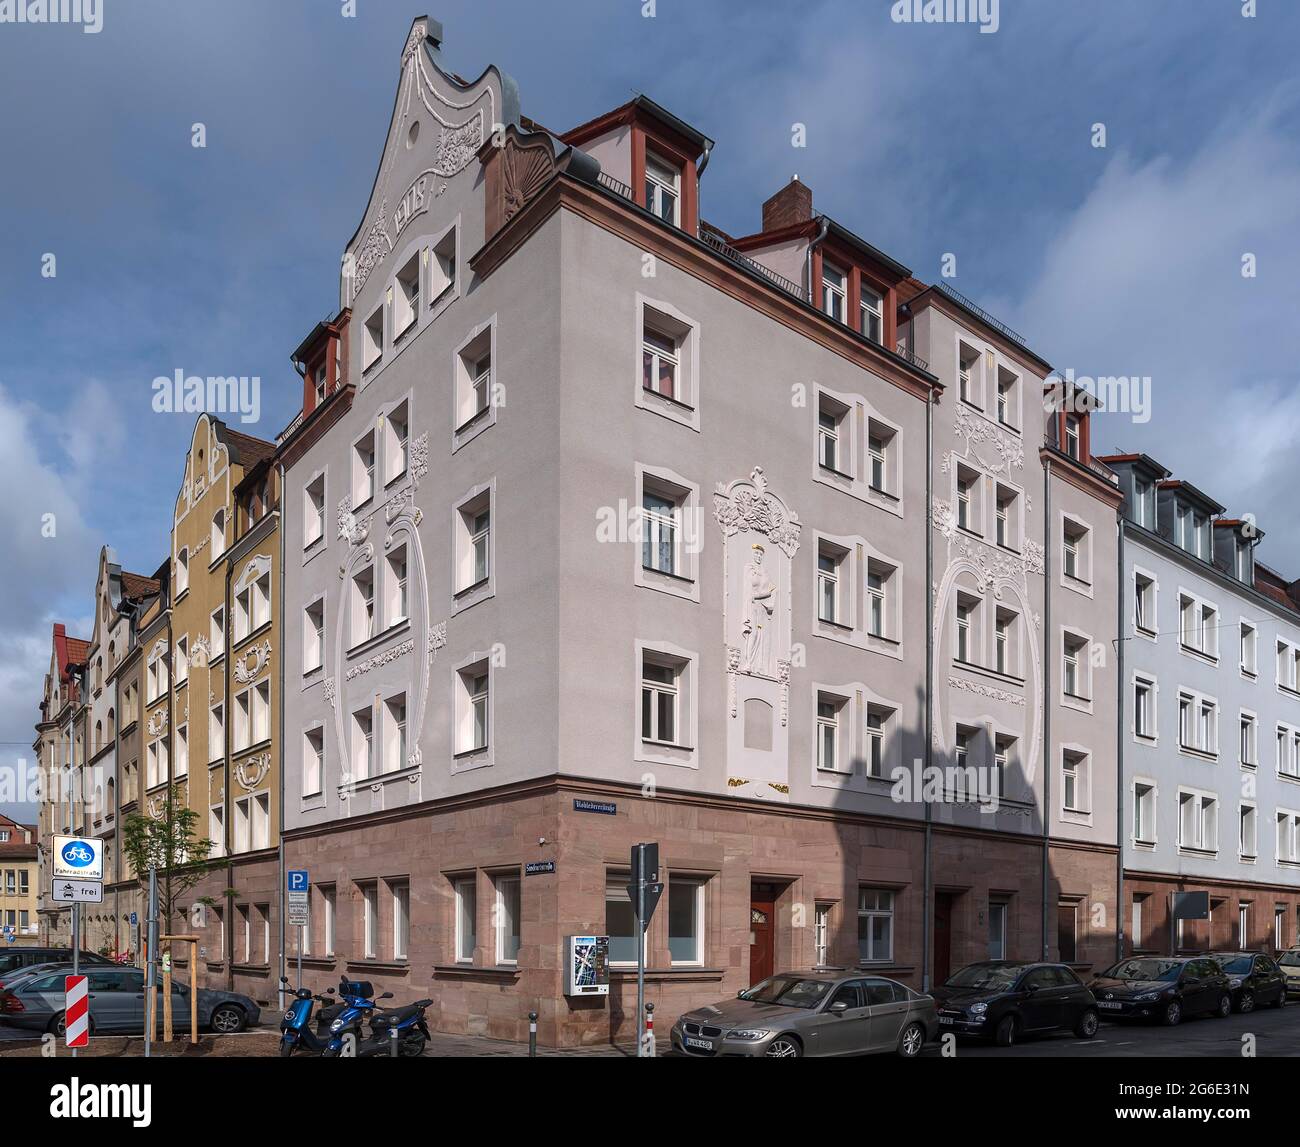 Edifici residenziali con facciate decorative in stile Art Nouveau, costruiti nel 1908, Norimberga, Franconia Centrale, Baviera, Germania Foto Stock